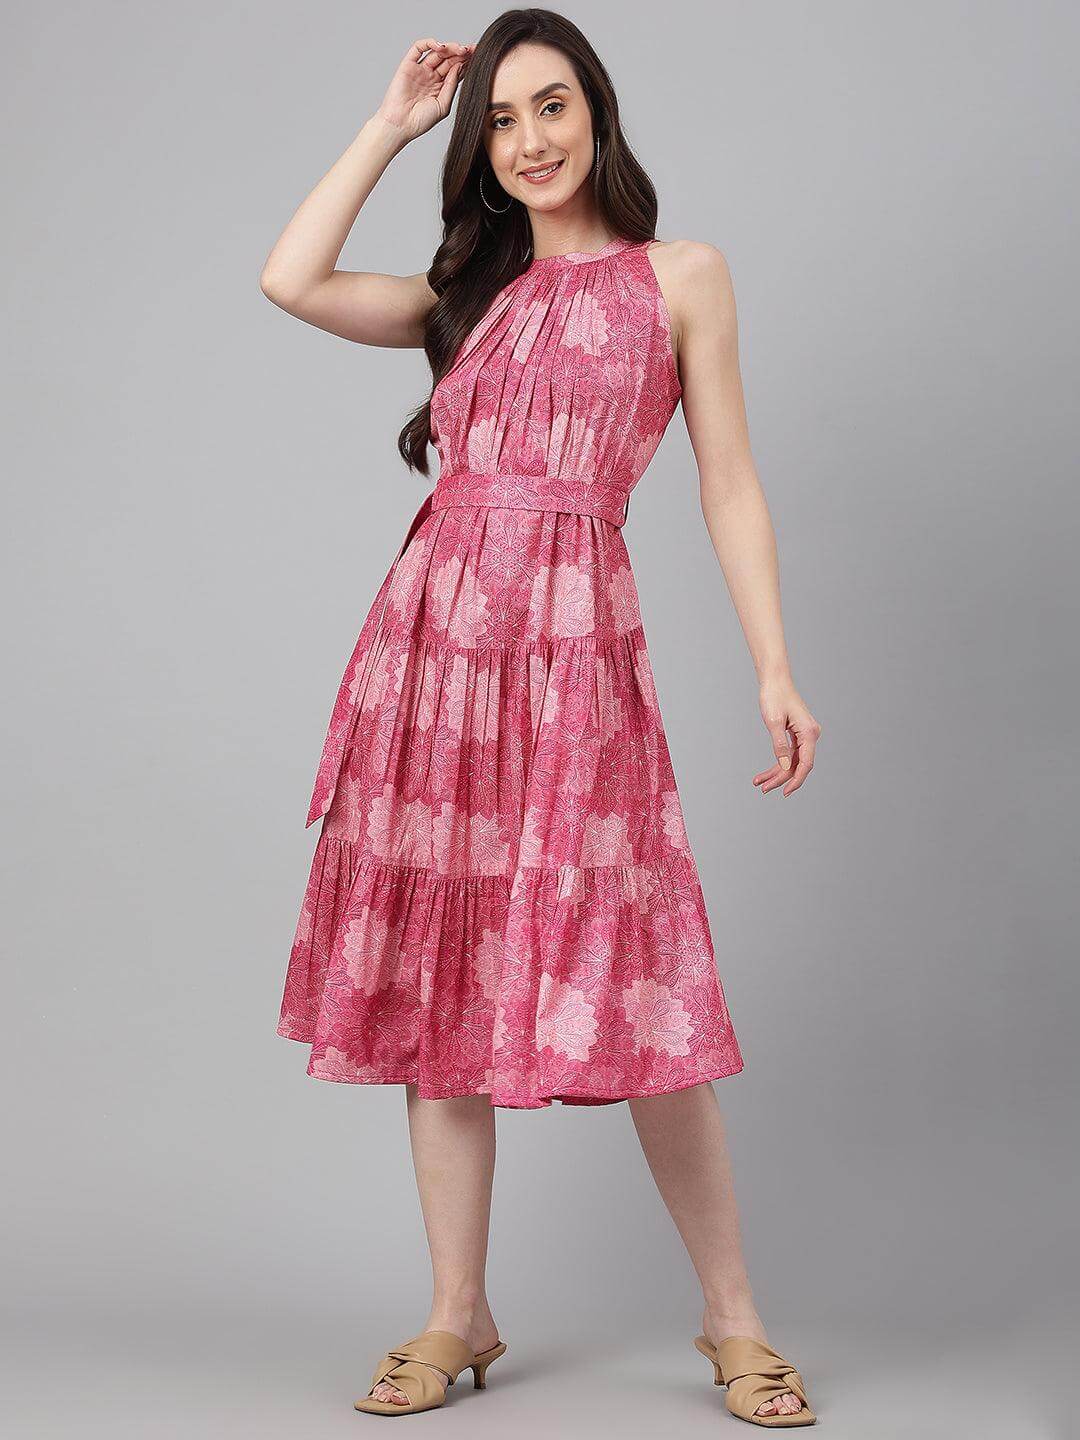 Pink Crepe Digital Print Tiered Western Dress